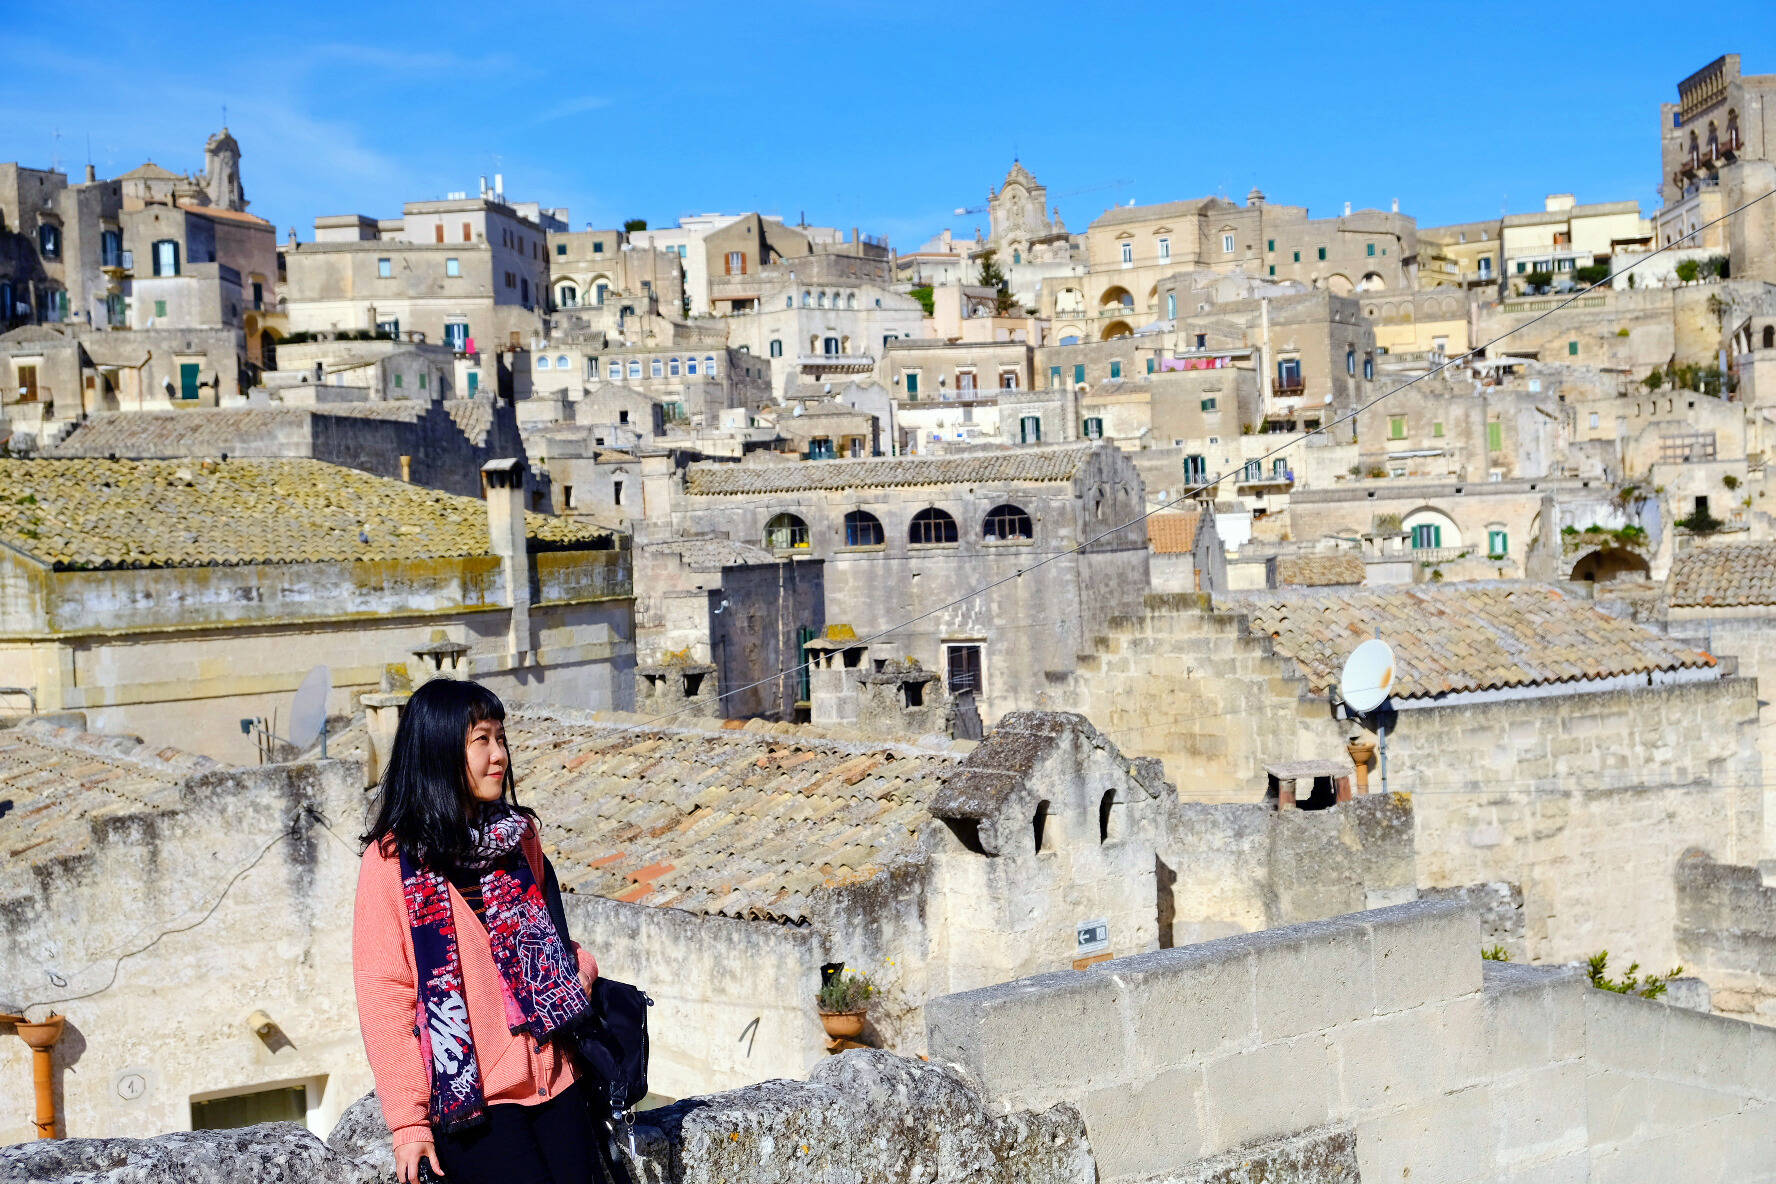 《007:无暇赴死》取景地 | 意大利石头城马泰拉